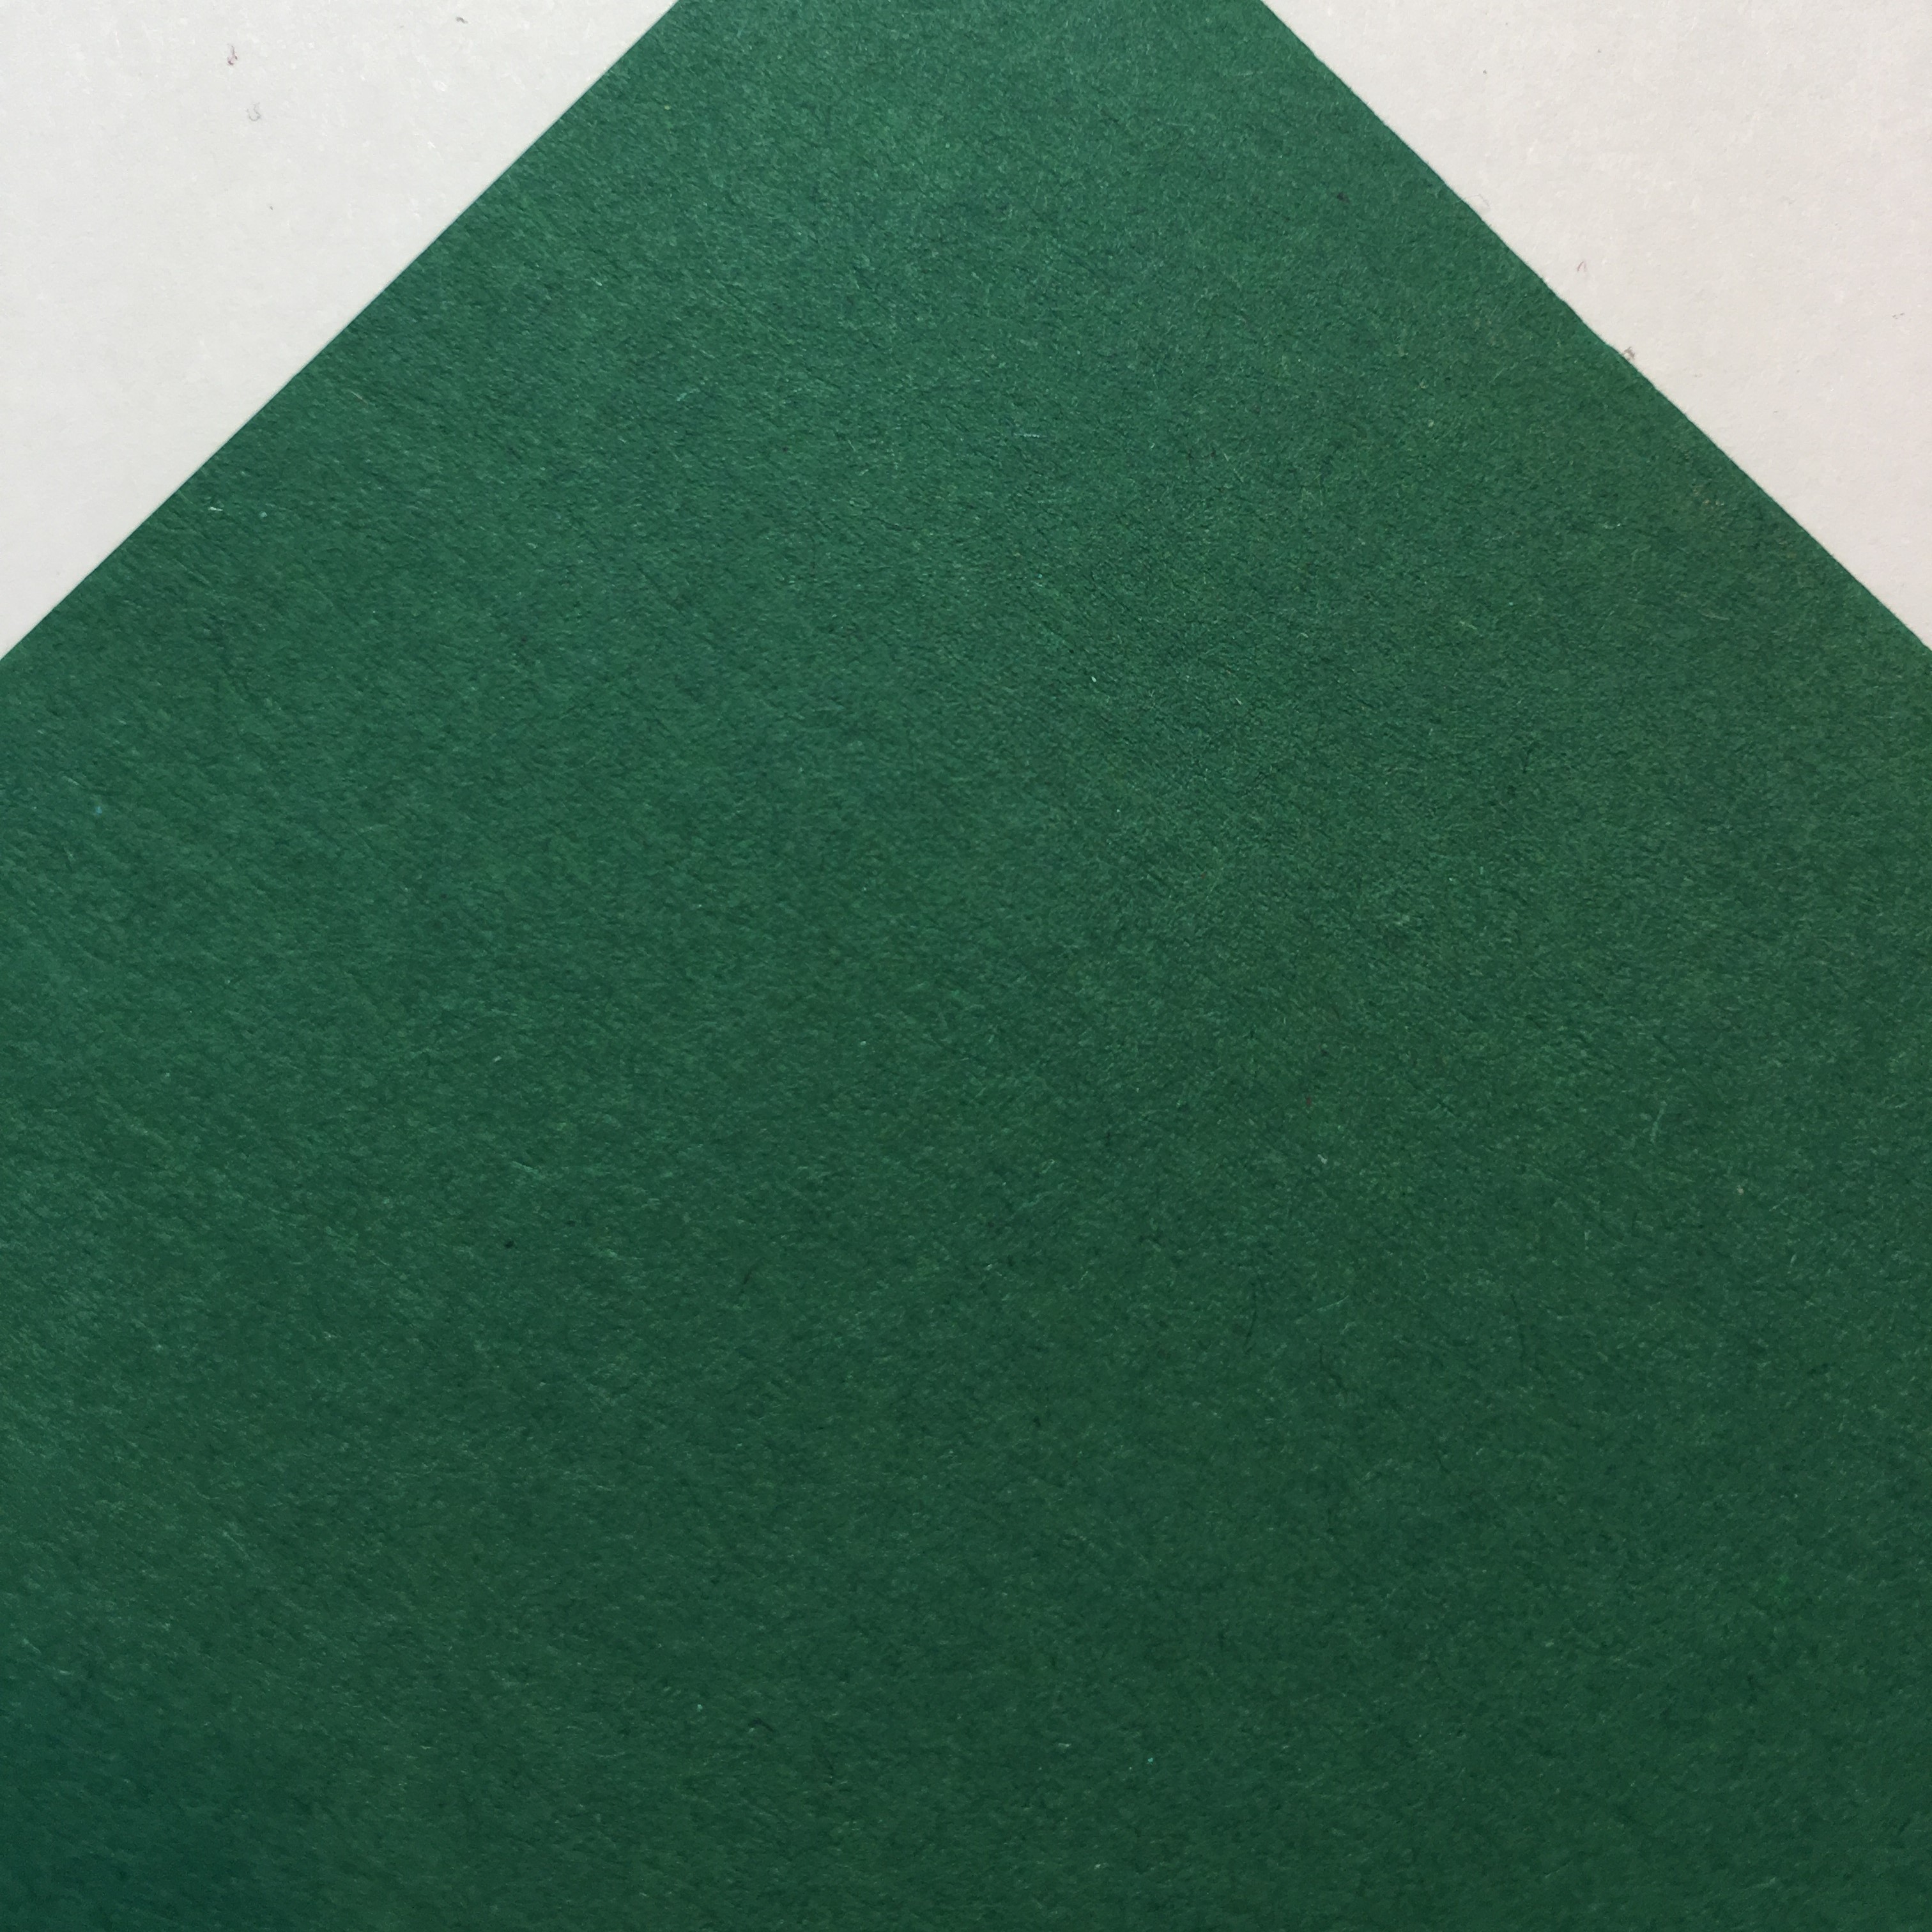 Картон гладкий Creative board emerald, 270г/м2, 30х30